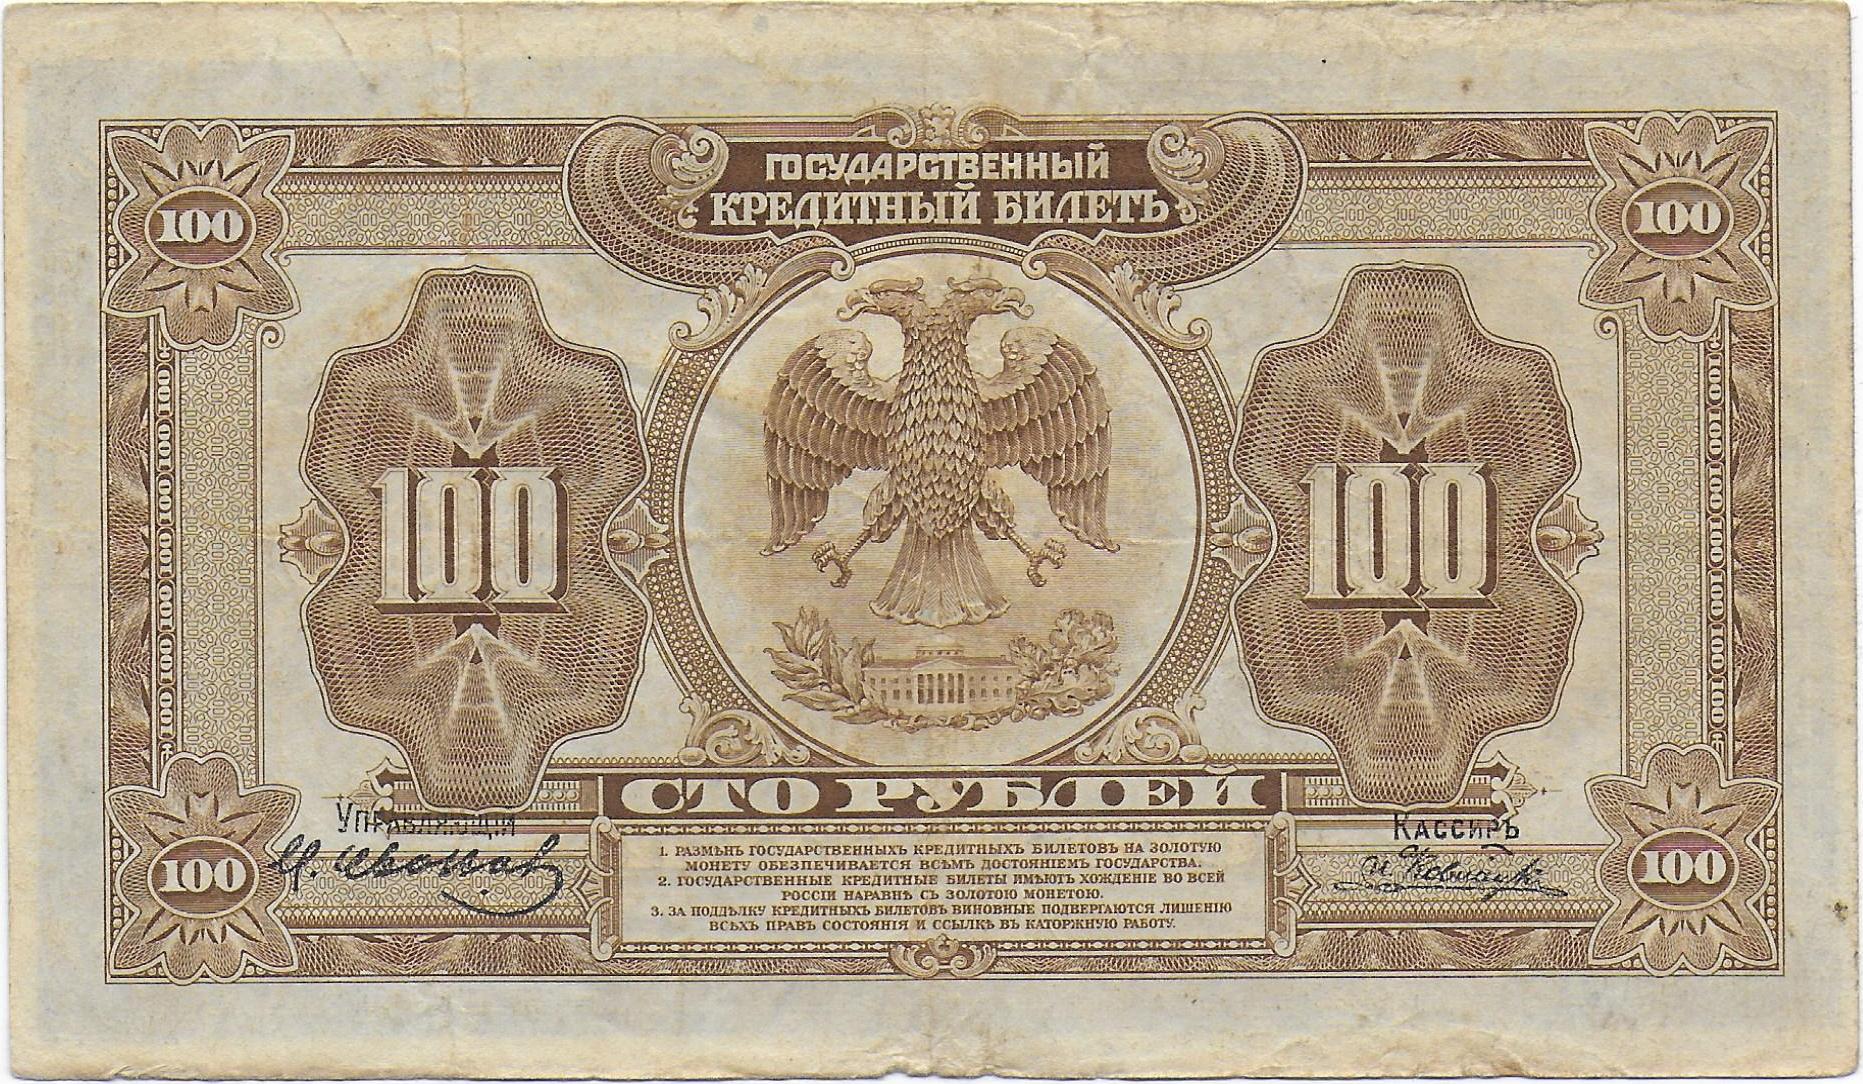 Russia East Siberia 100 Rubles 1918 back.jpg